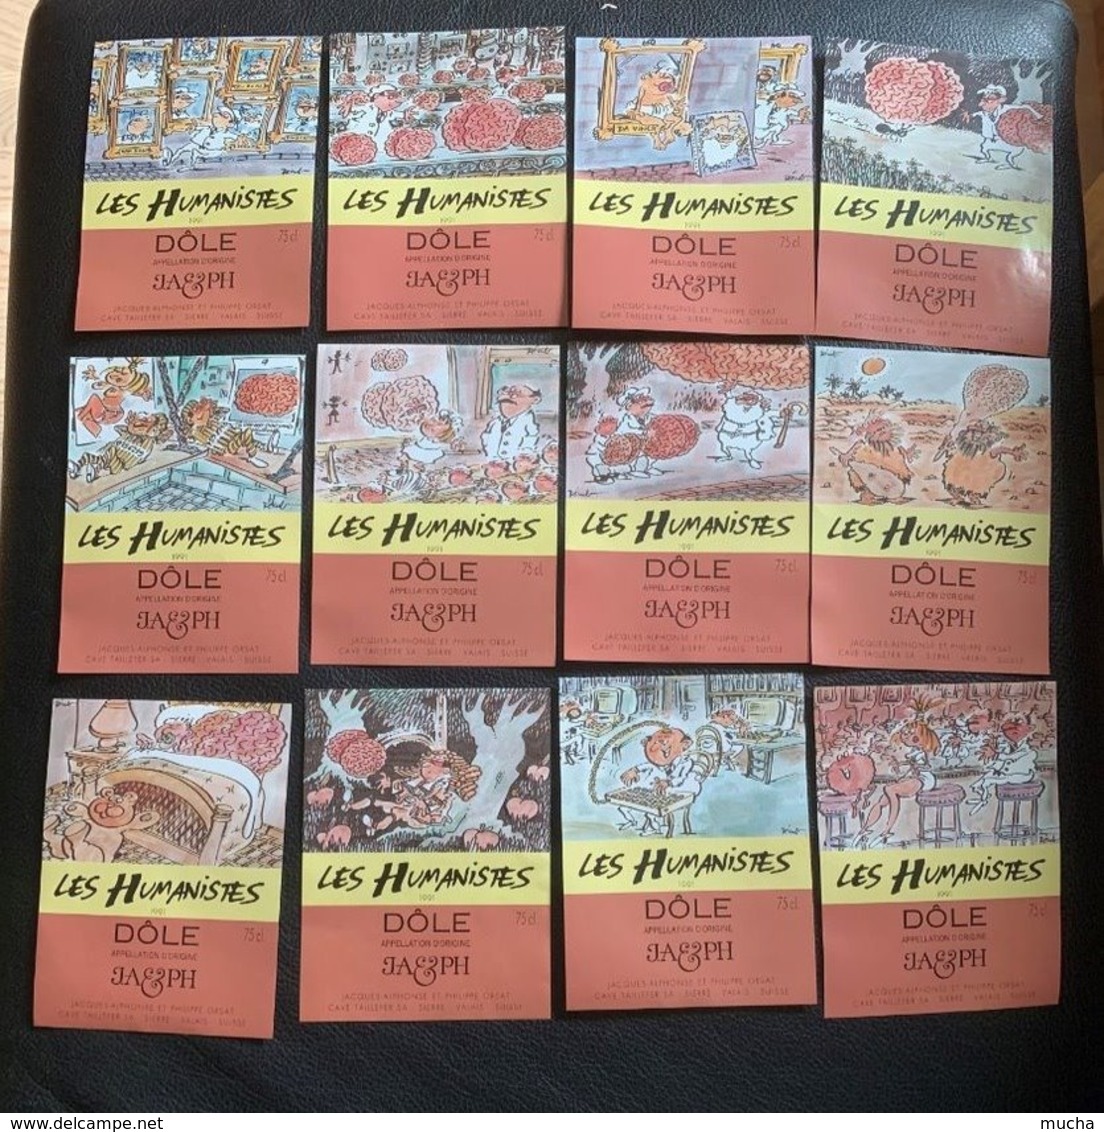 15071 - Les Humanistes 1991 L'Intelligence Dôle Série Complète 24 étiquettes Illustration Pécub - Humour